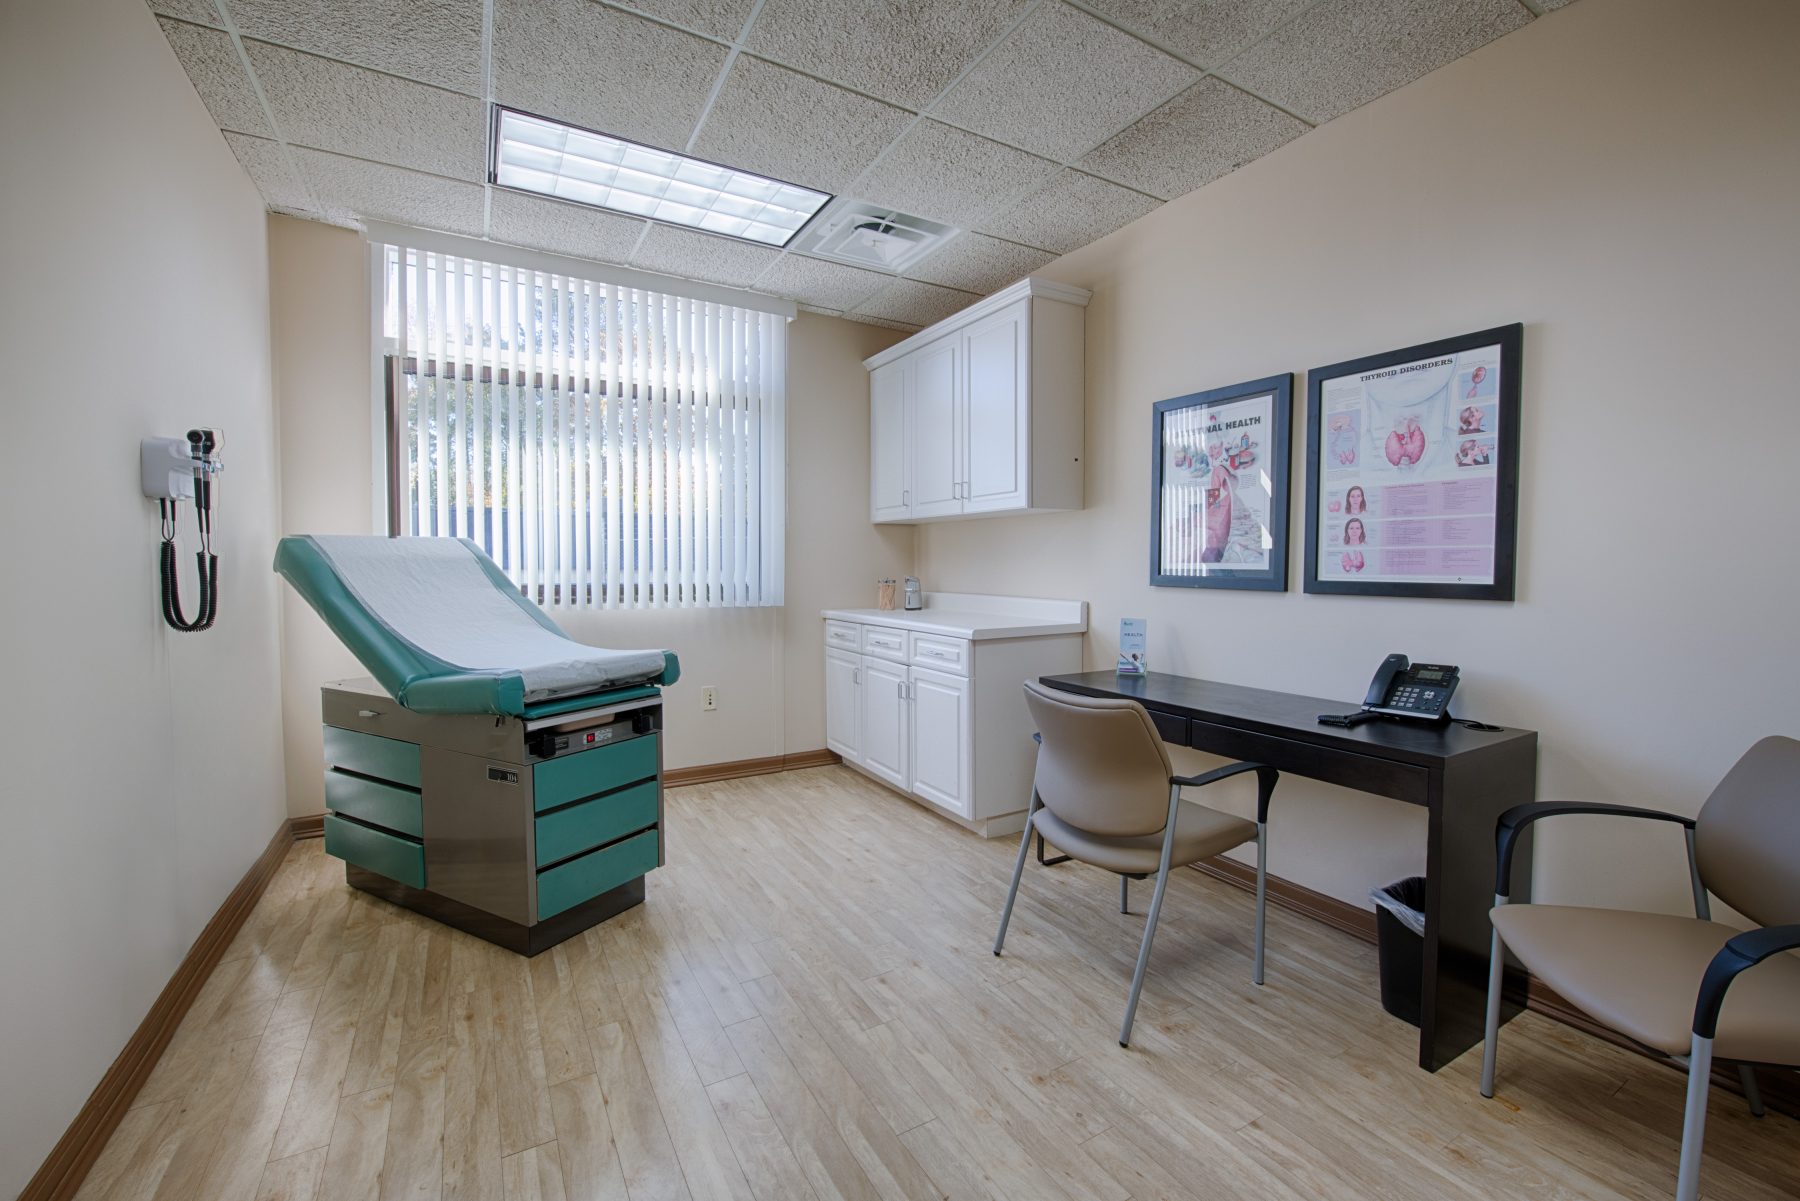 An exam room at Progressive Medical Center in Atlanta